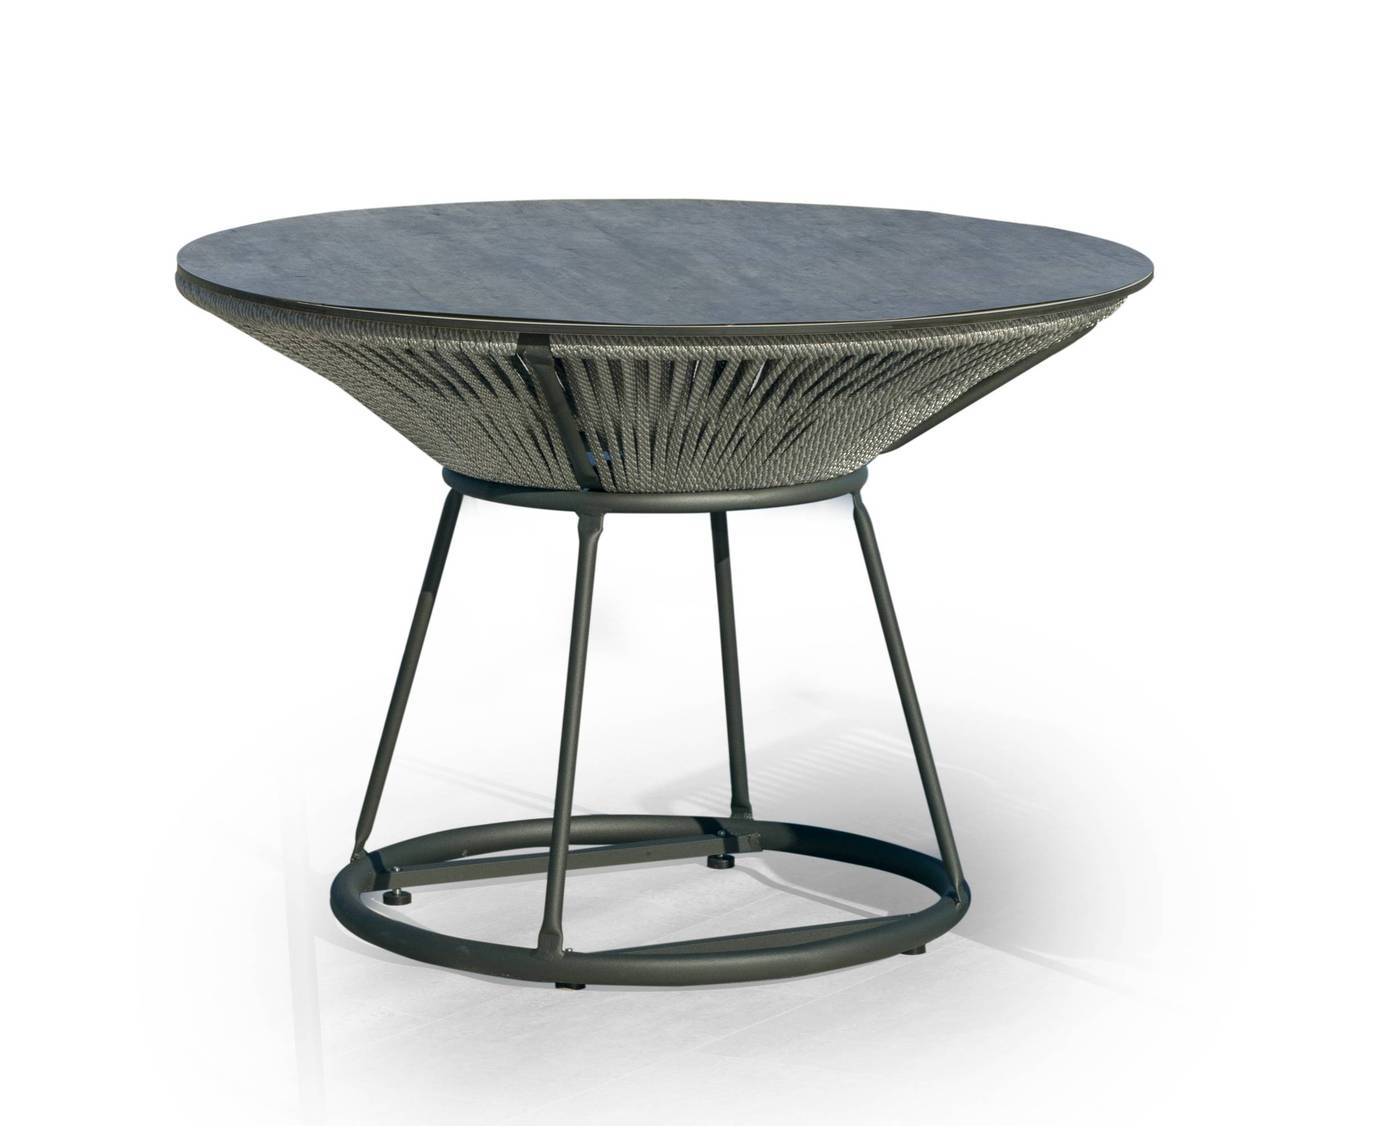 Mesa redonda de 150 cm, con tablero HPL ultra resistente. Estructura aluminio revestida de cuerda. Colores: blanco, gris, marrón o champagne.